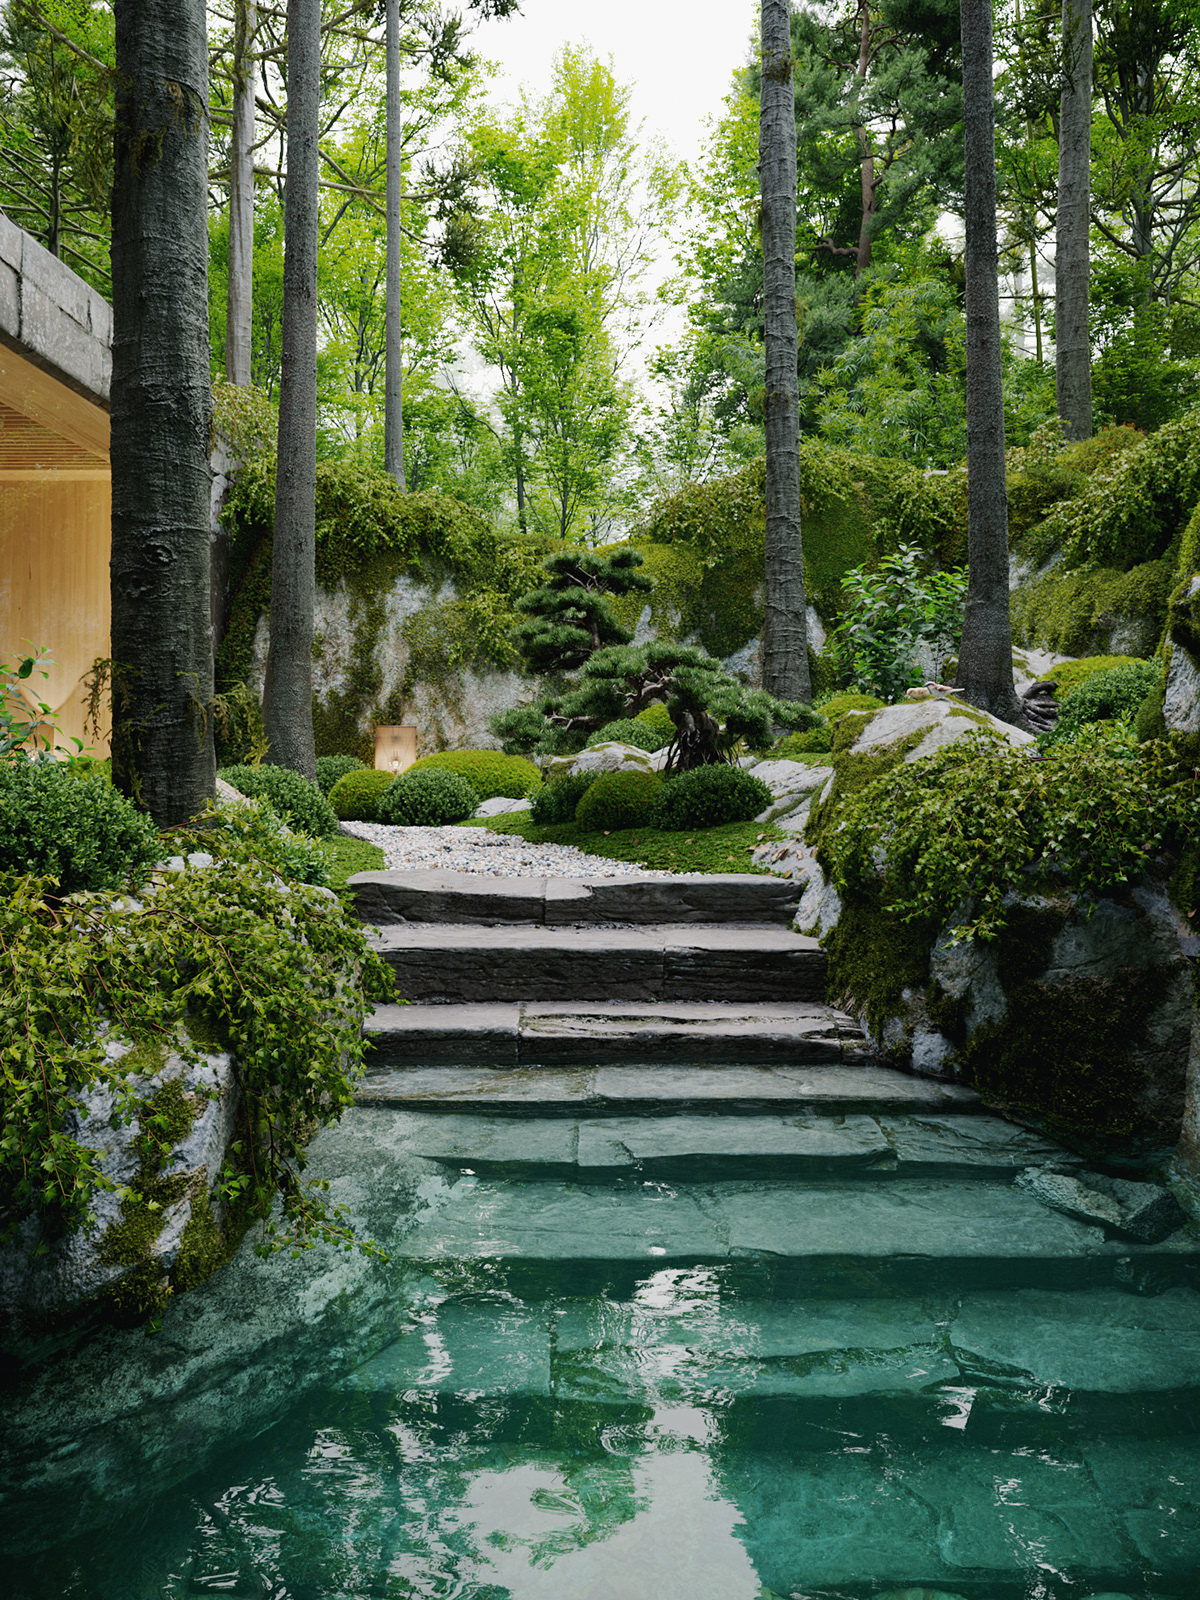 architecture archviz design exterior garden Interior japanese stone wood